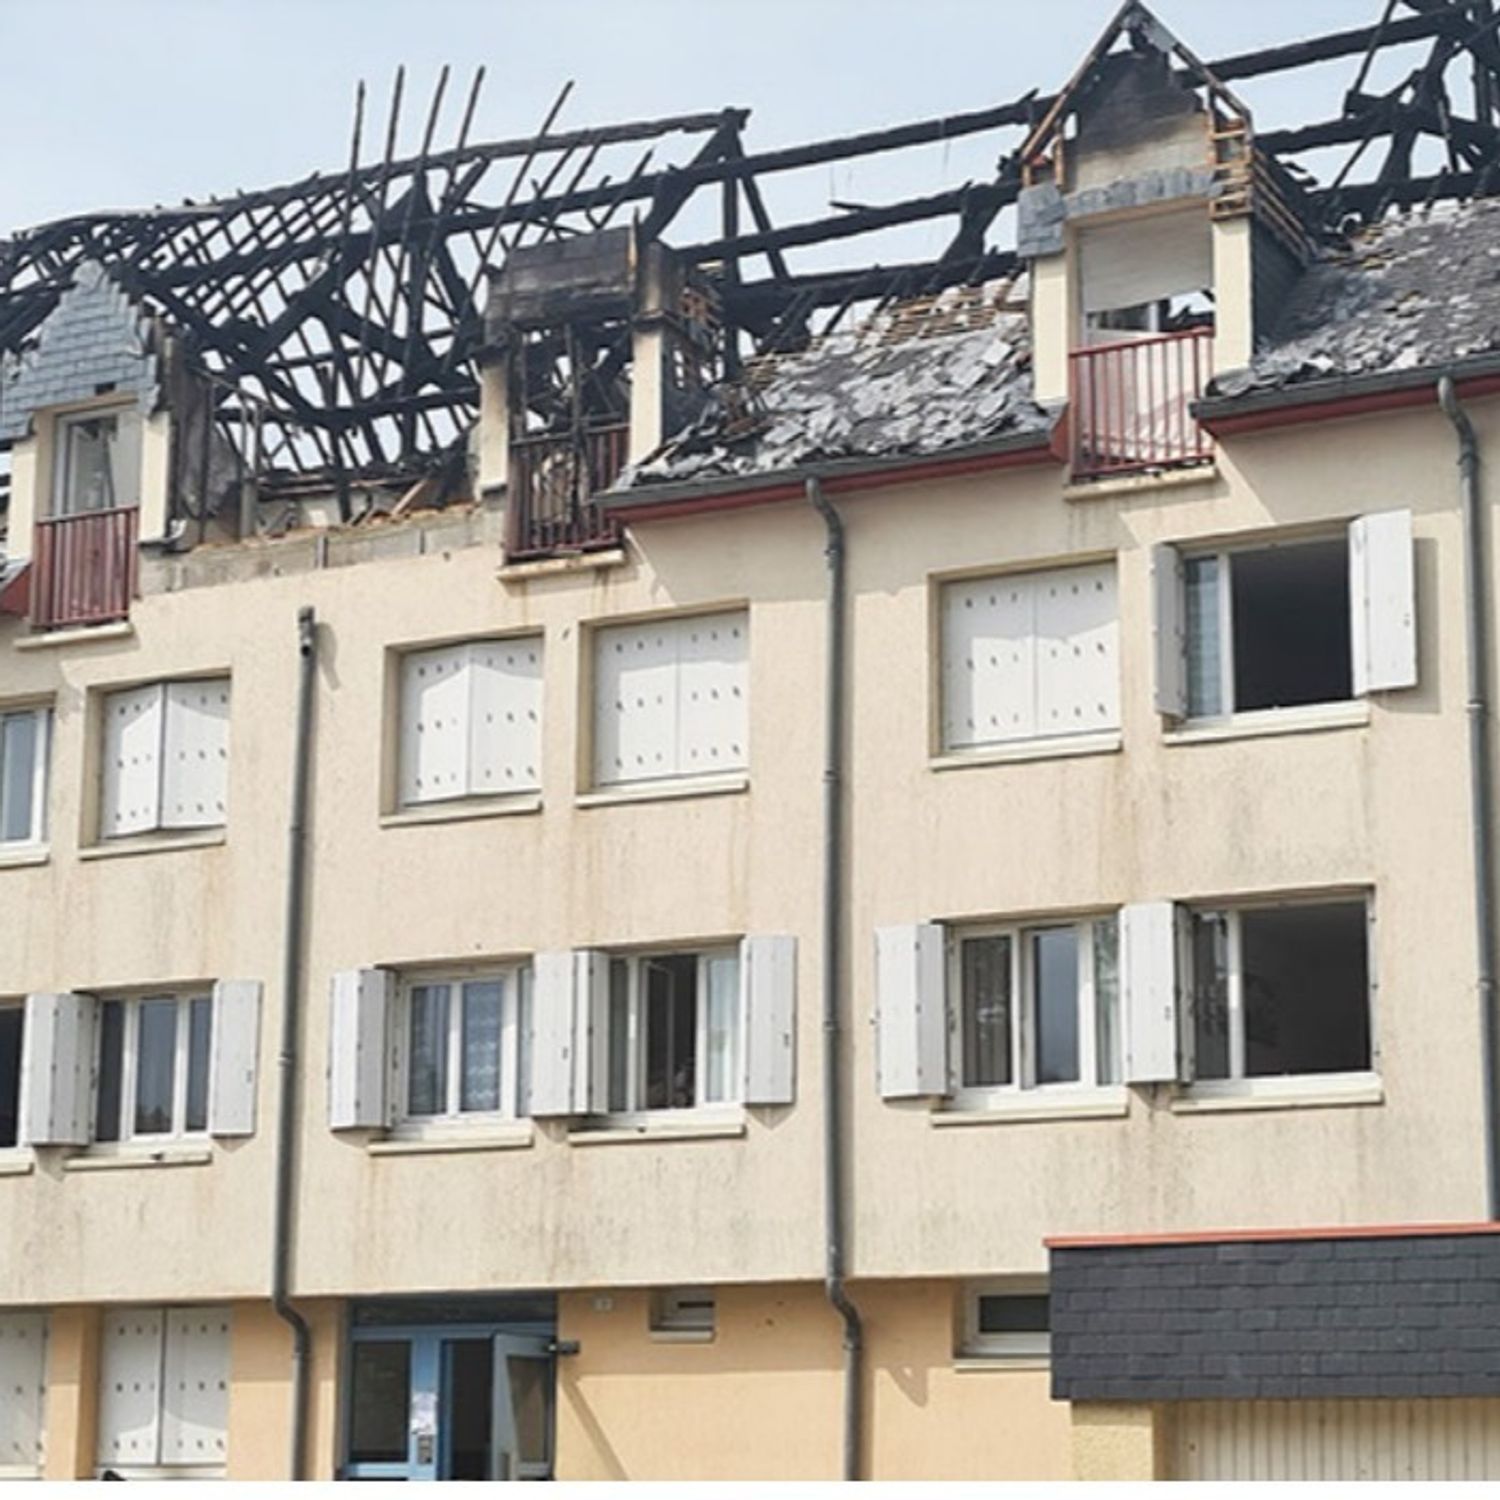 Blois : en attente d’un relogement après l’incendie de leur immeuble